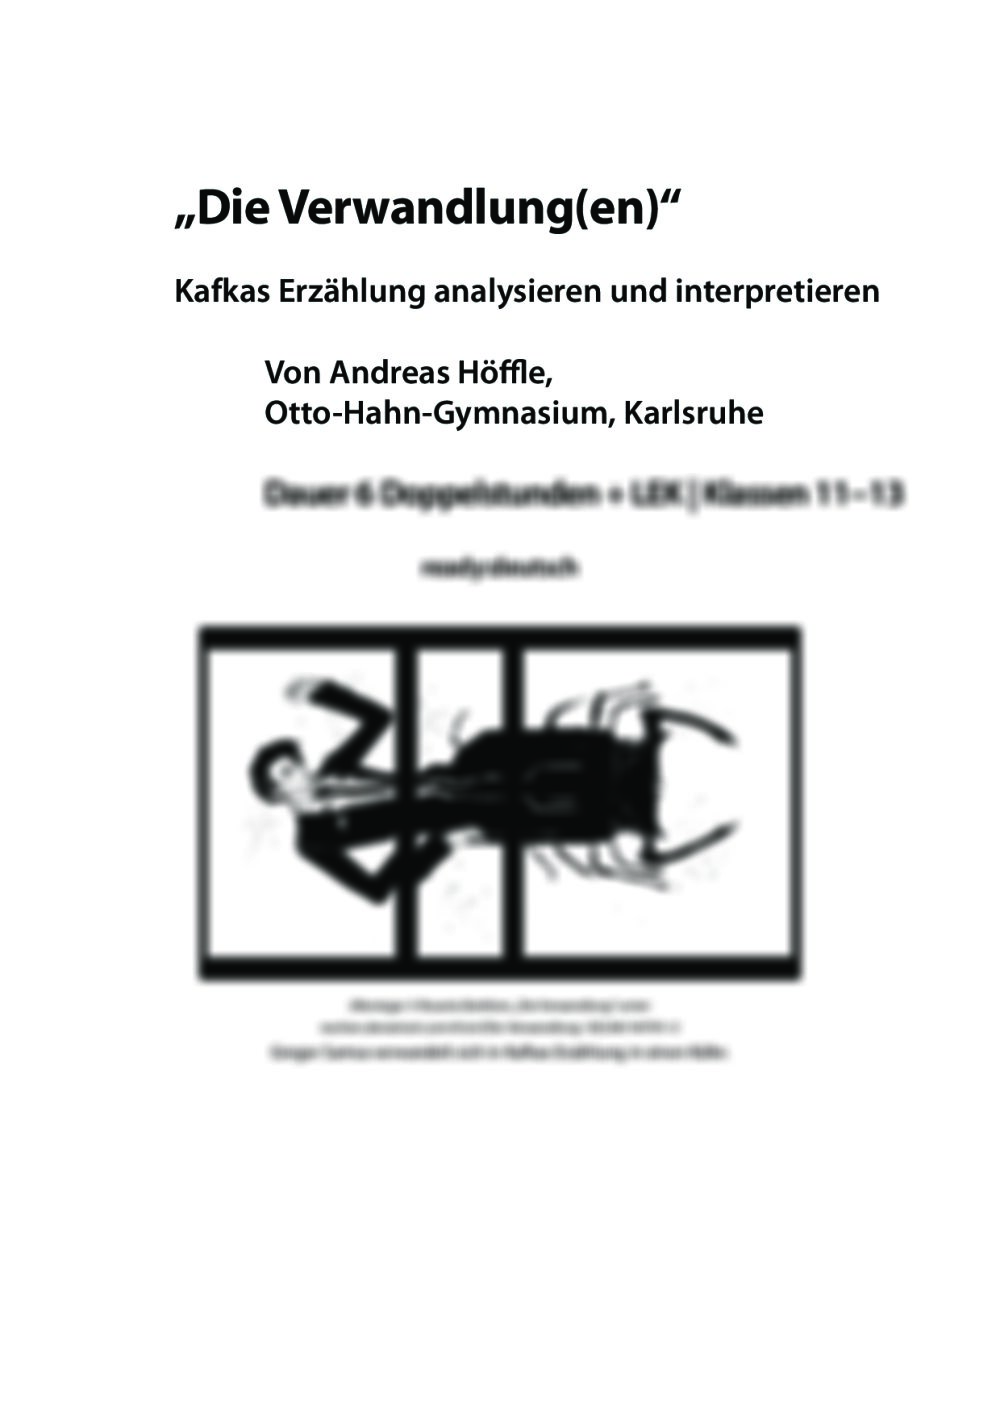 Kafkas Erzählung analysieren und interpretieren - Seite 1